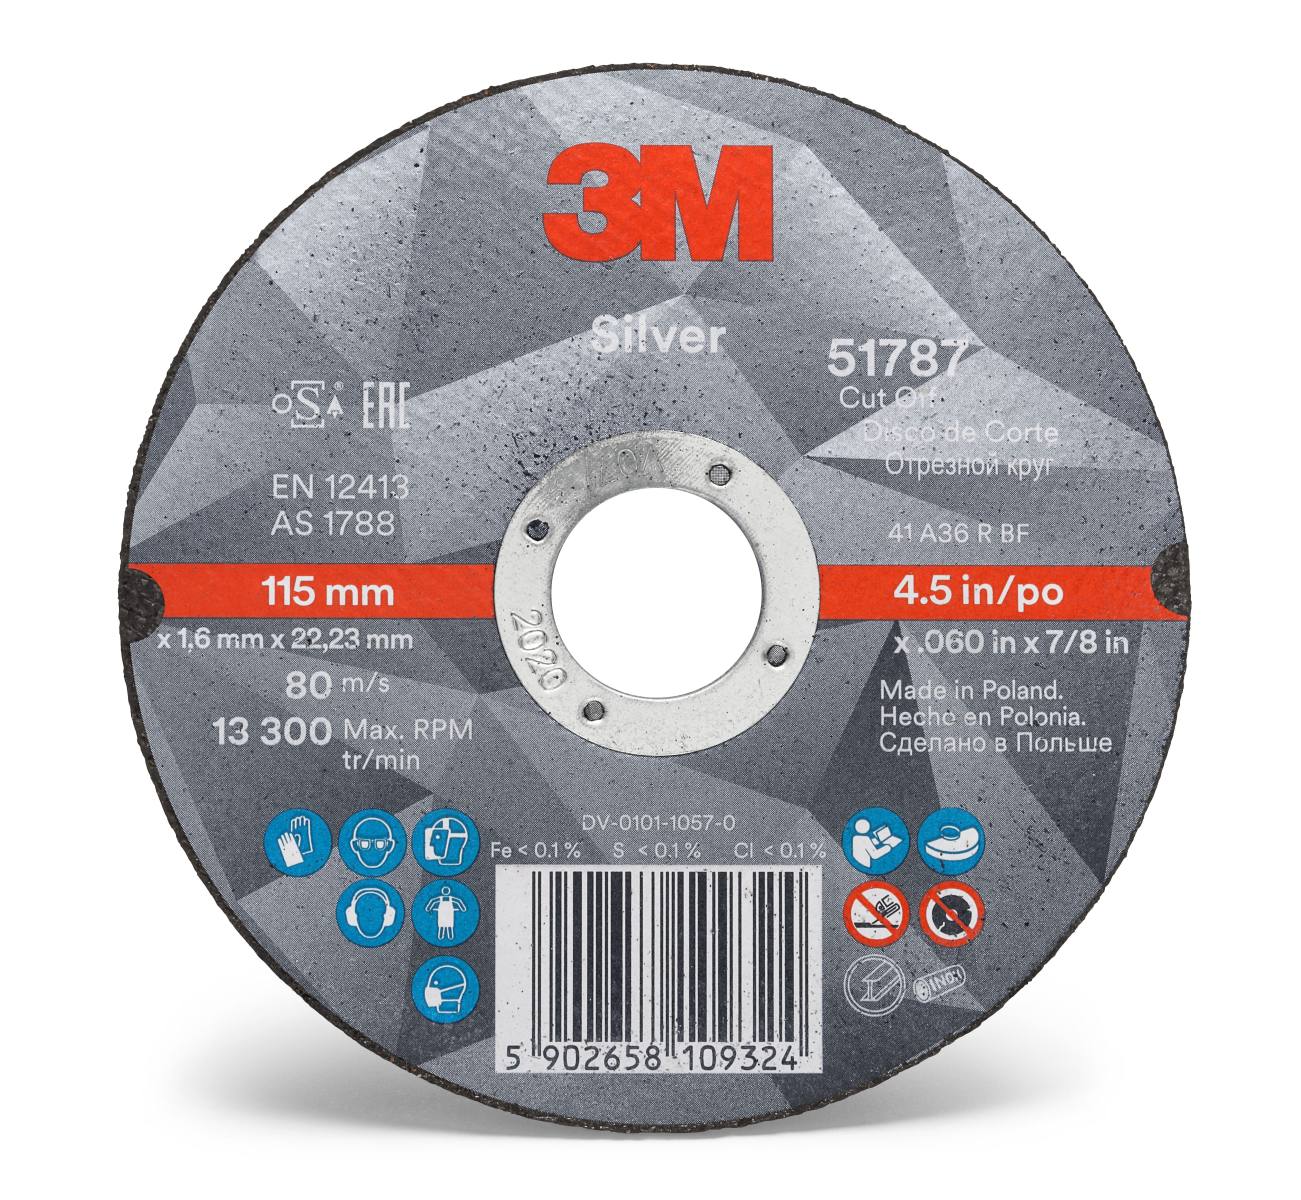 3M Silver Cut-Off Wheel cutting-off wheel, 75 mm, 1.0 mm, 10 mm, T41, 51767